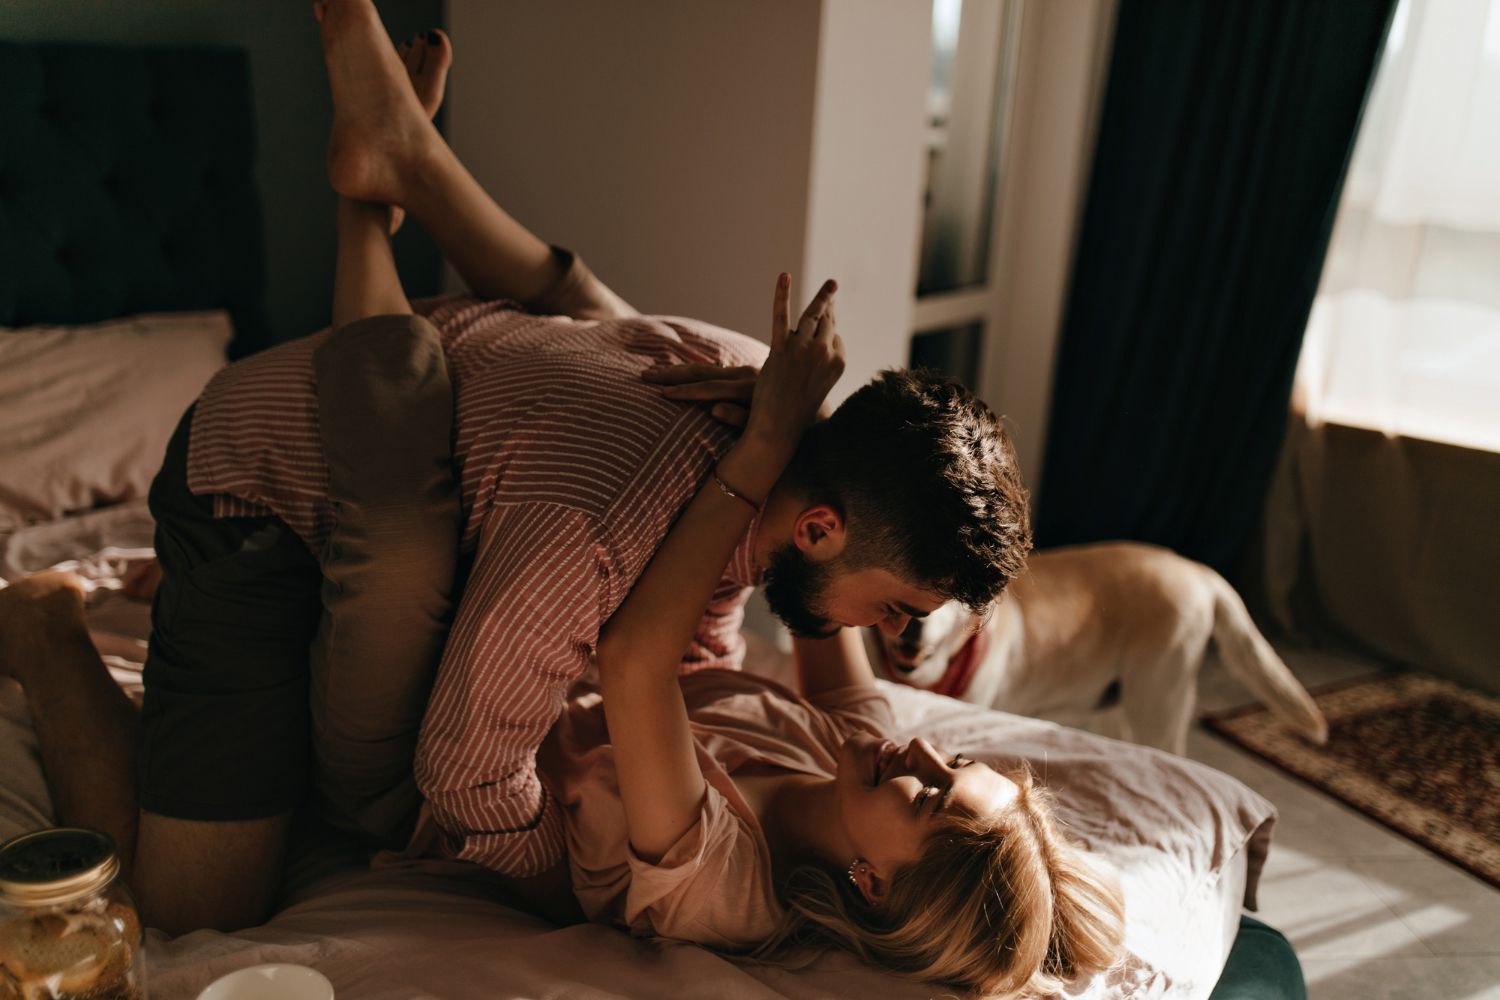 Приділяй достатньо уваги поцілункам під час сексу